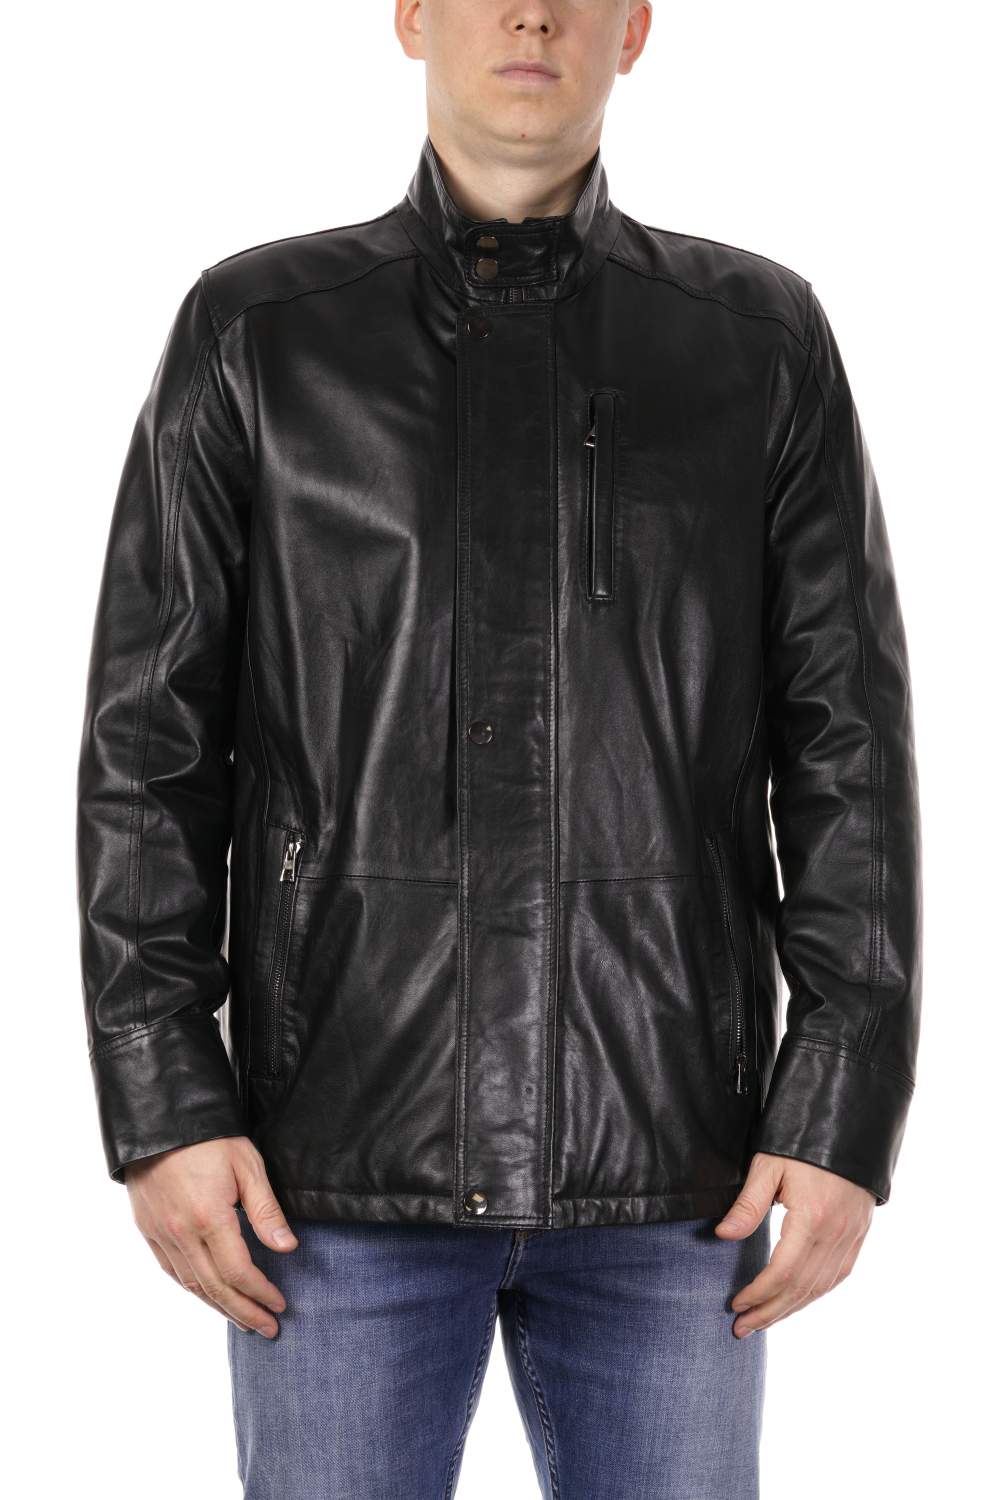 Страница 2 - Мужские кожаные куртки больших размеров PDONNA - Мегамаркет